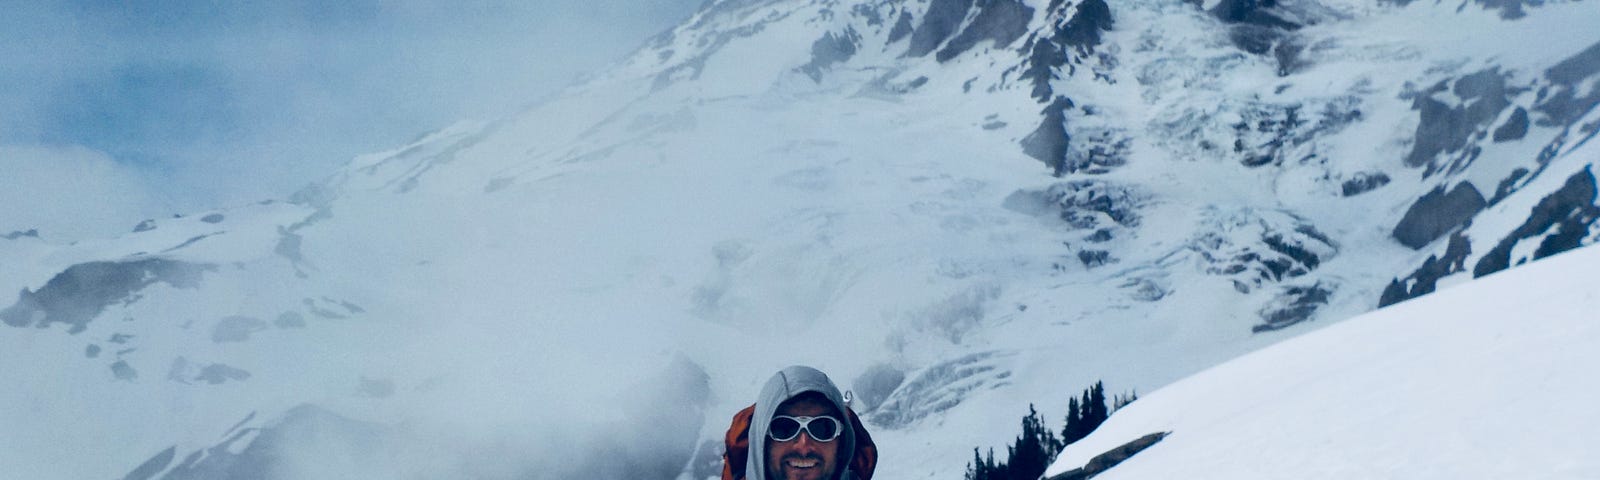 Pat at Mt. Rainier in 2017